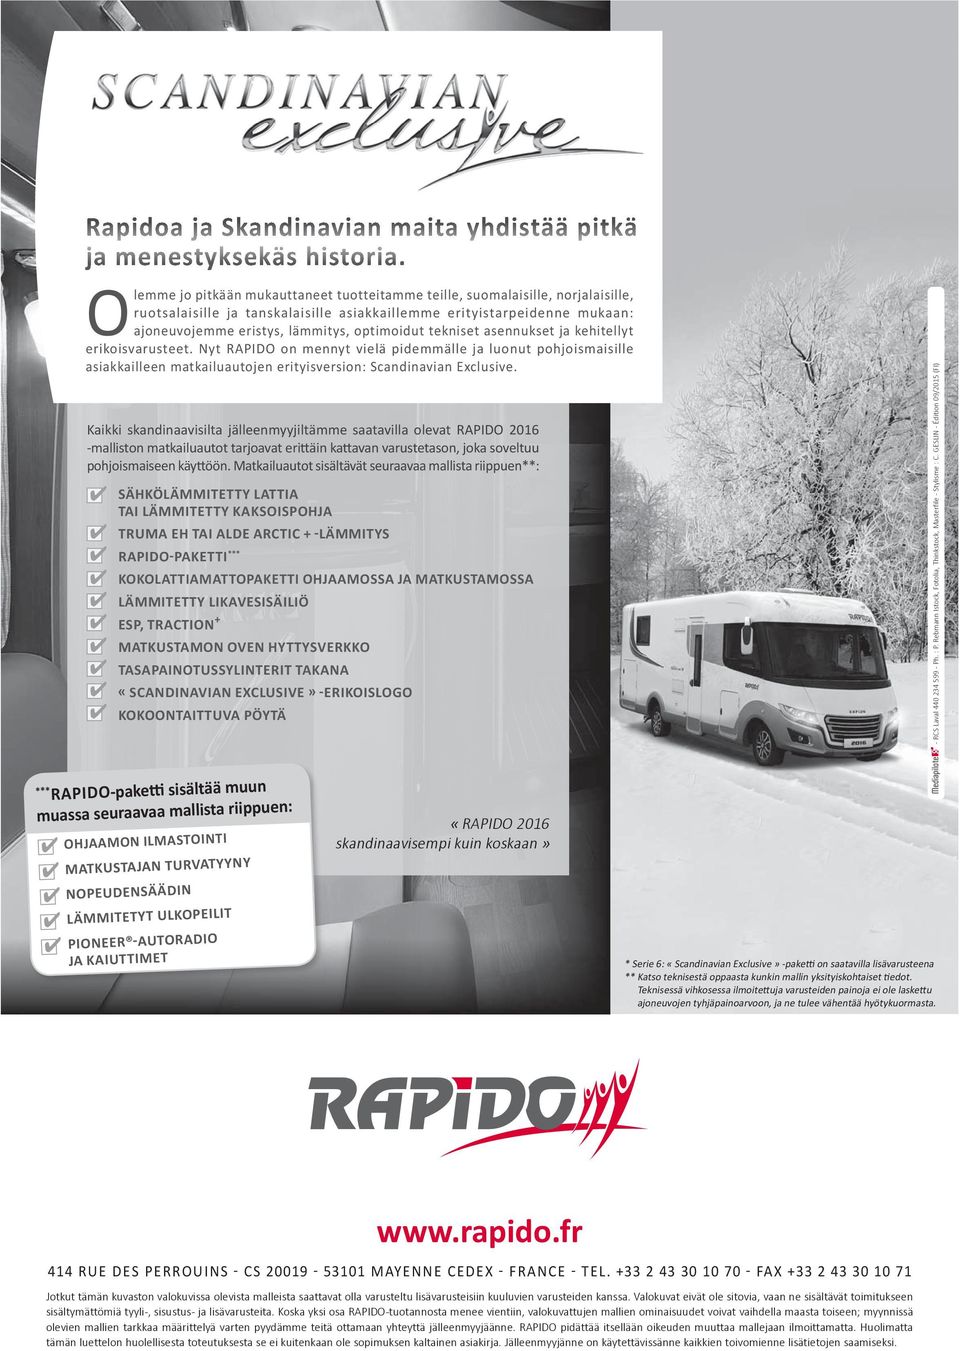 optimoidut tekniset asennukset ja kehitellyt erikoisvarusteet. Nyt RAPIDO on mennyt vielä pidemmälle ja luonut pohjoismaisille asiakkailleen matkailuautojen erityisversion: Scandinavian Exclusive.